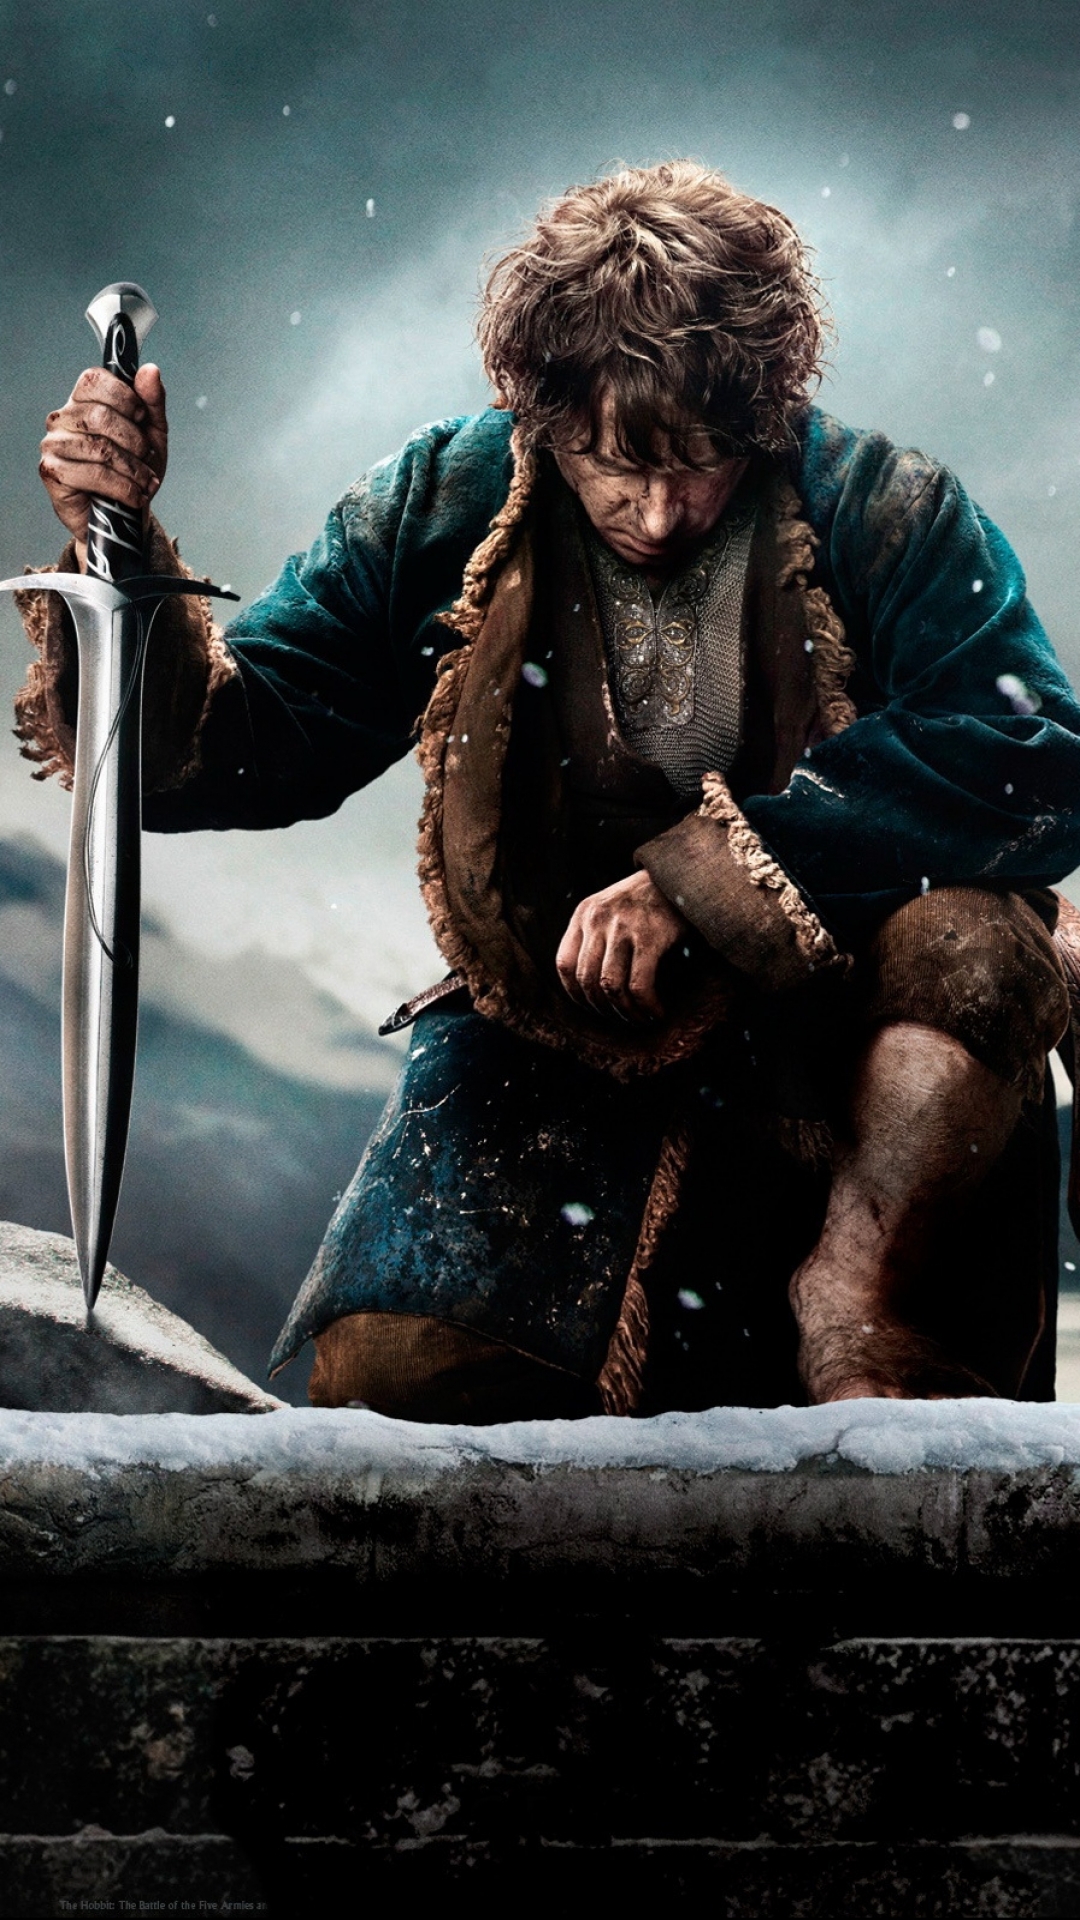 Descarga gratuita de fondo de pantalla para móvil de El Señor De Los Anillos, Películas, El Hobbit: La Batalla De Los Cinco Ejércitos.